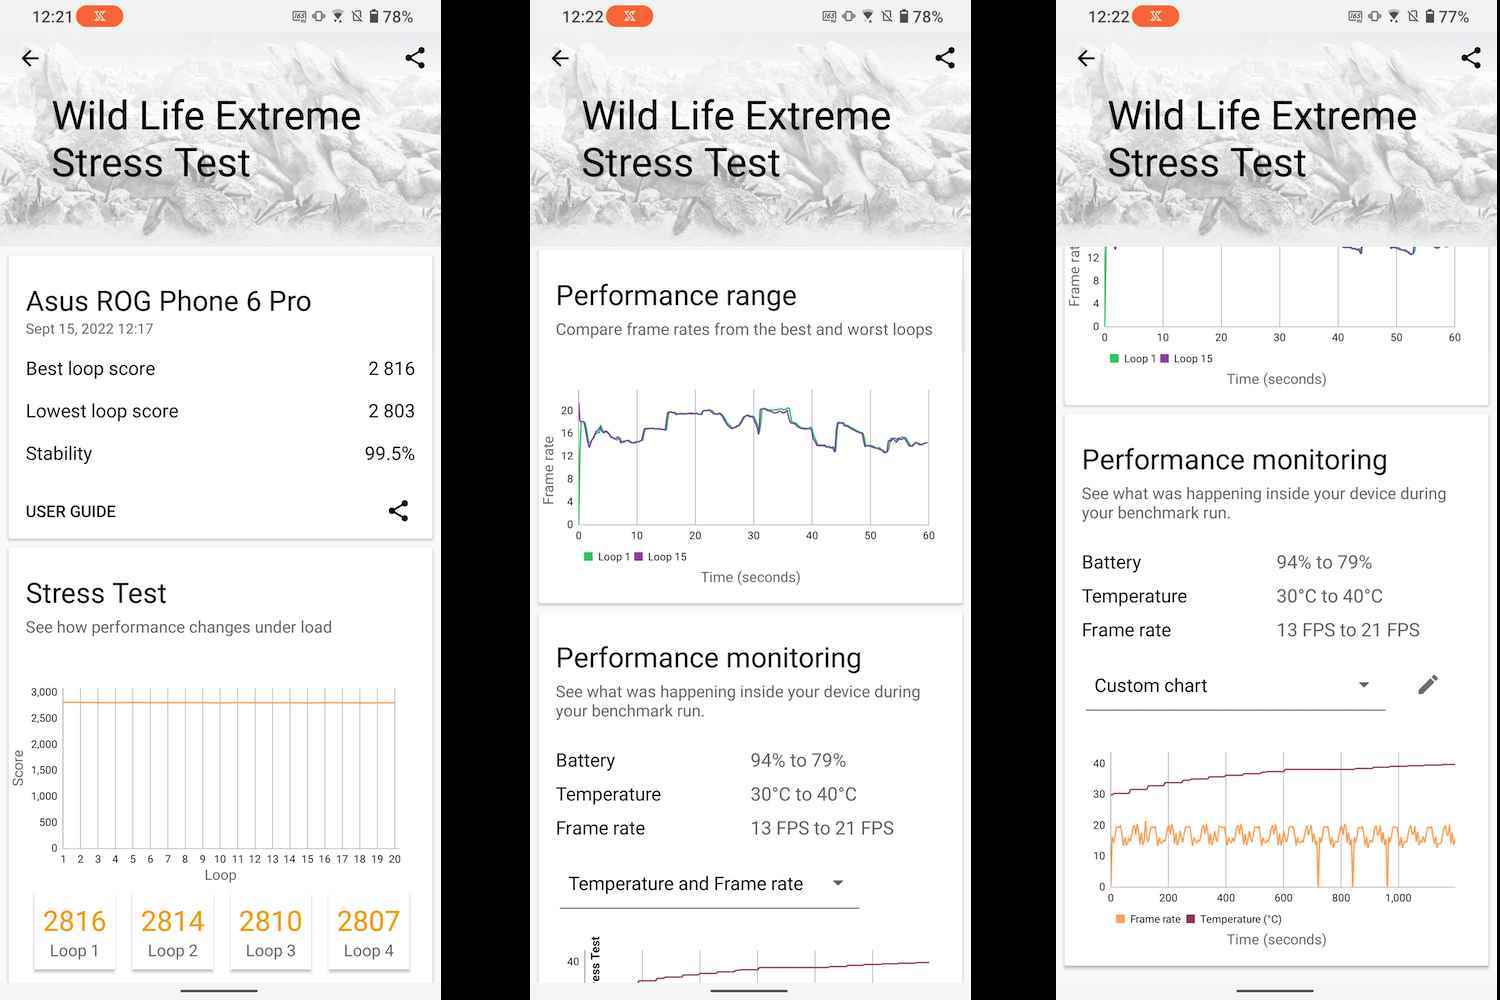 Asus ROG Phone 6 Pro stres testi kıyaslama sonuçları.